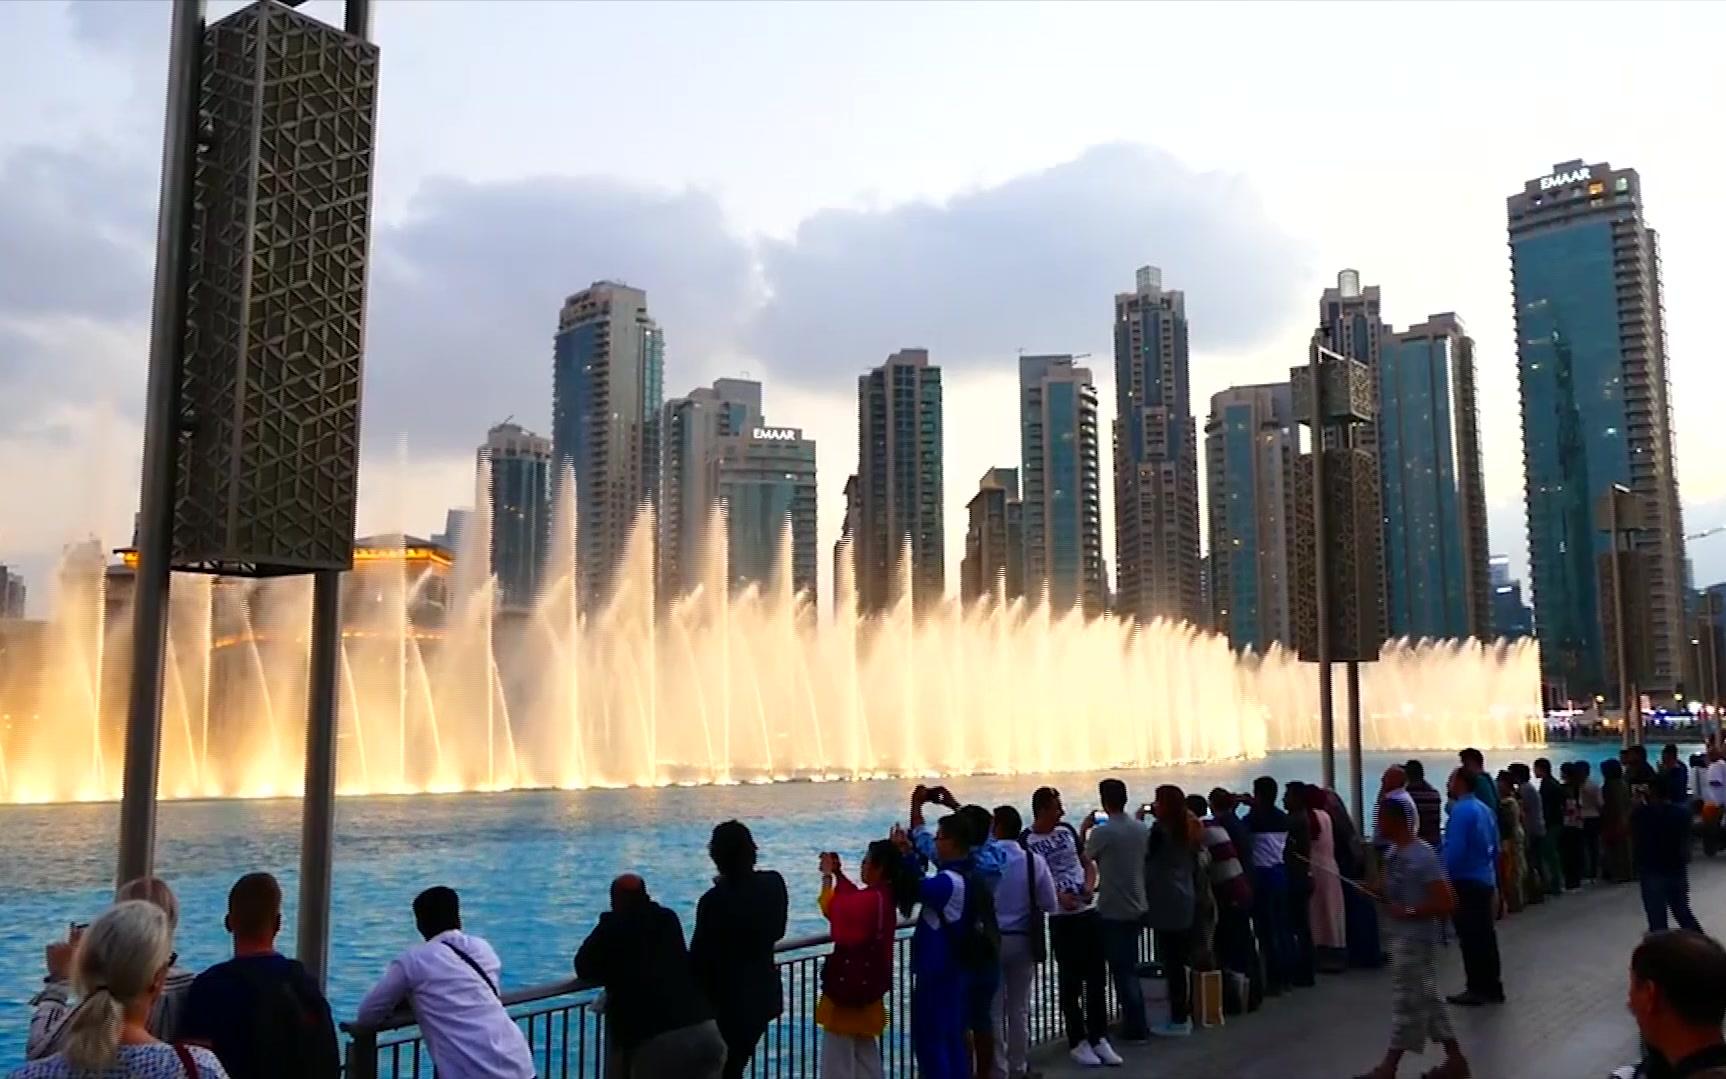 迪拜的城市美景,除了富丽堂皇,这里的音乐喷泉让人着迷